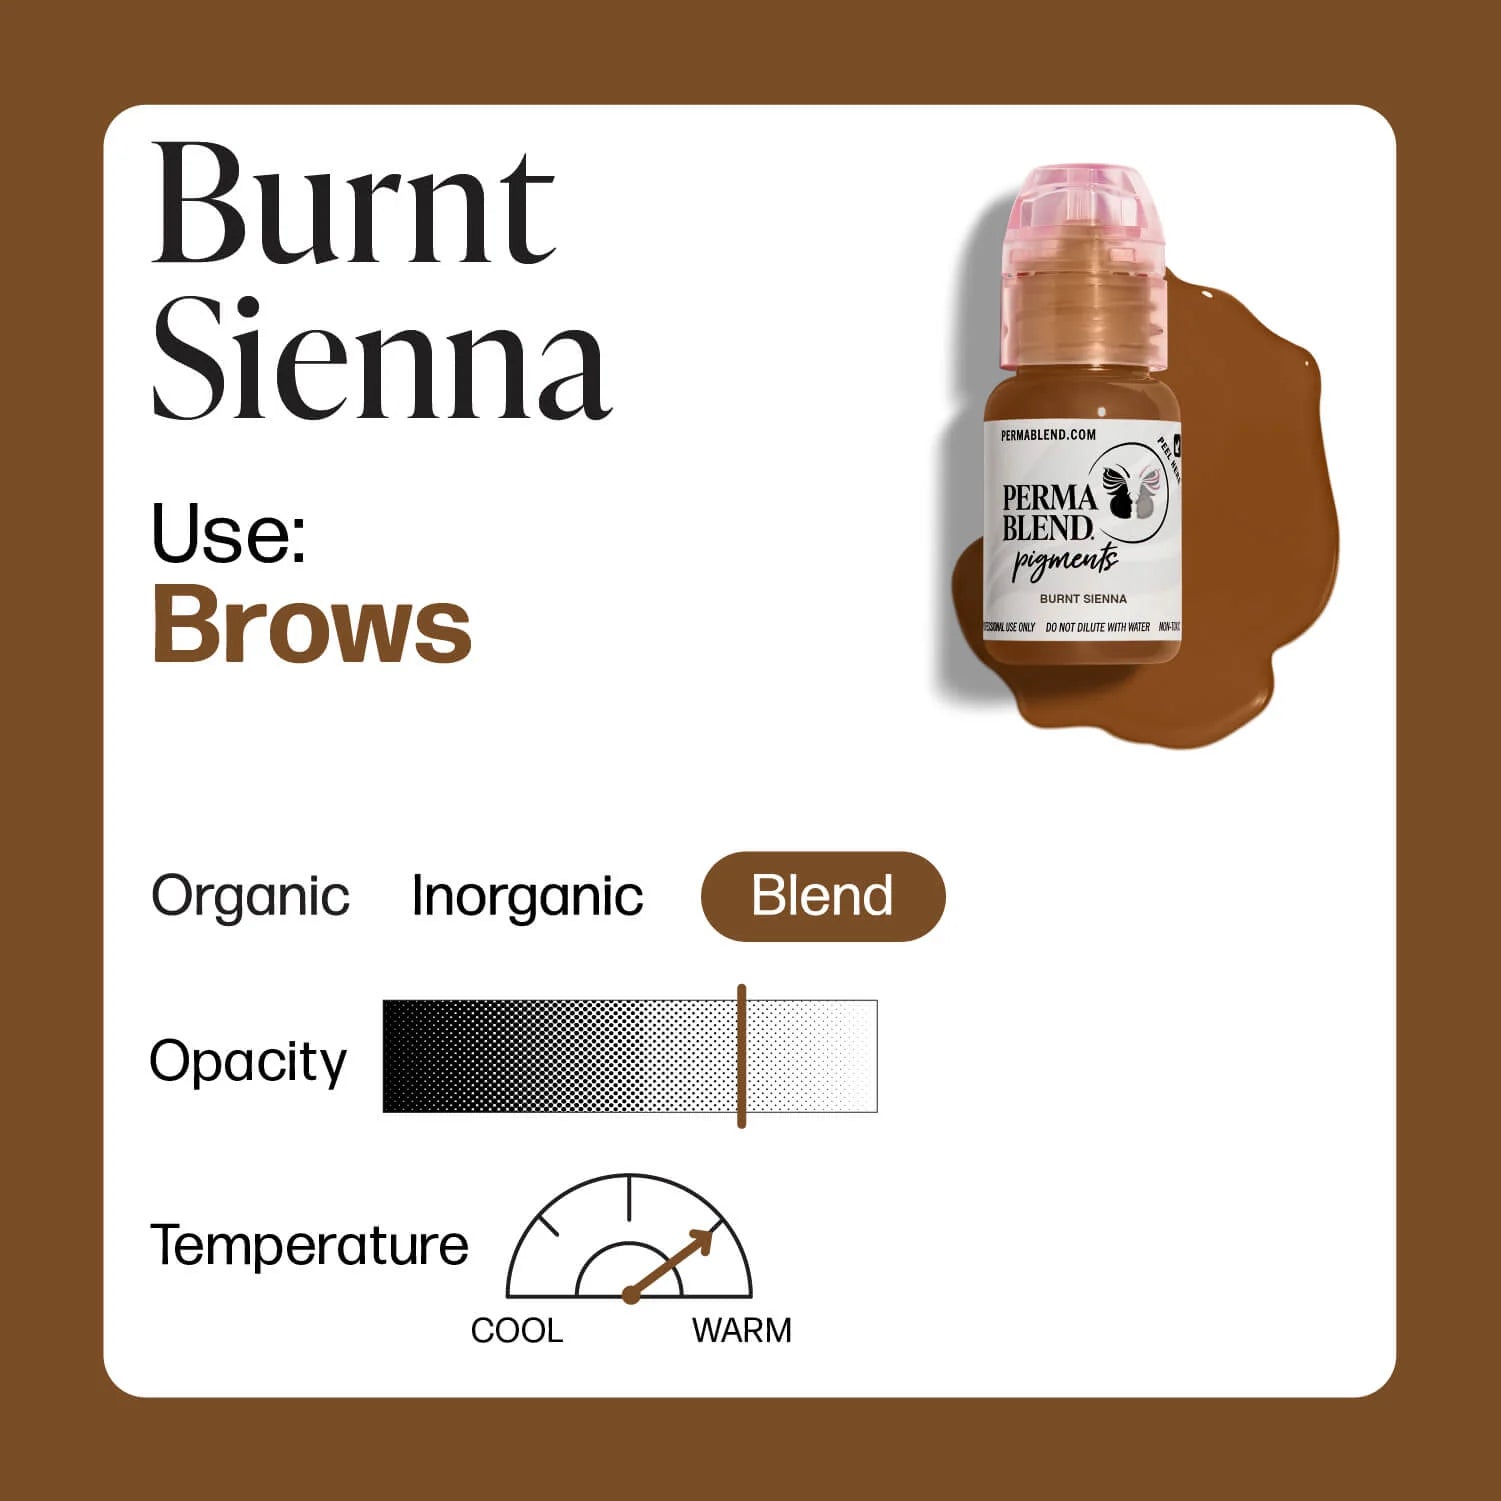 Perma Blend - Burnt Sienna